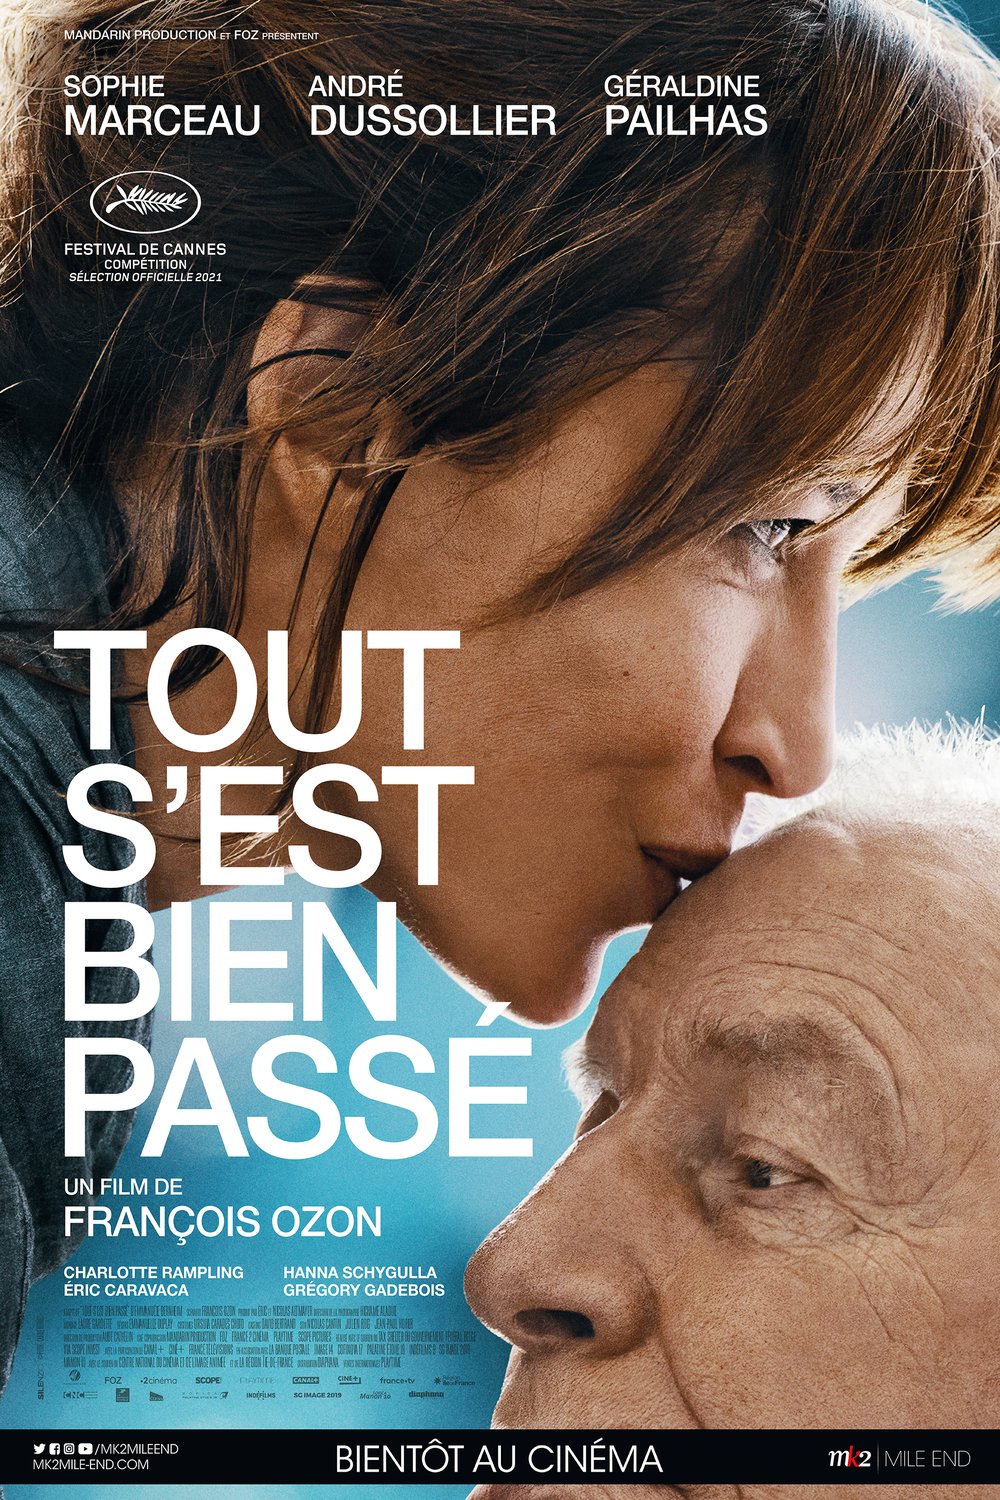 Poster of the movie Tout s'est bien passé